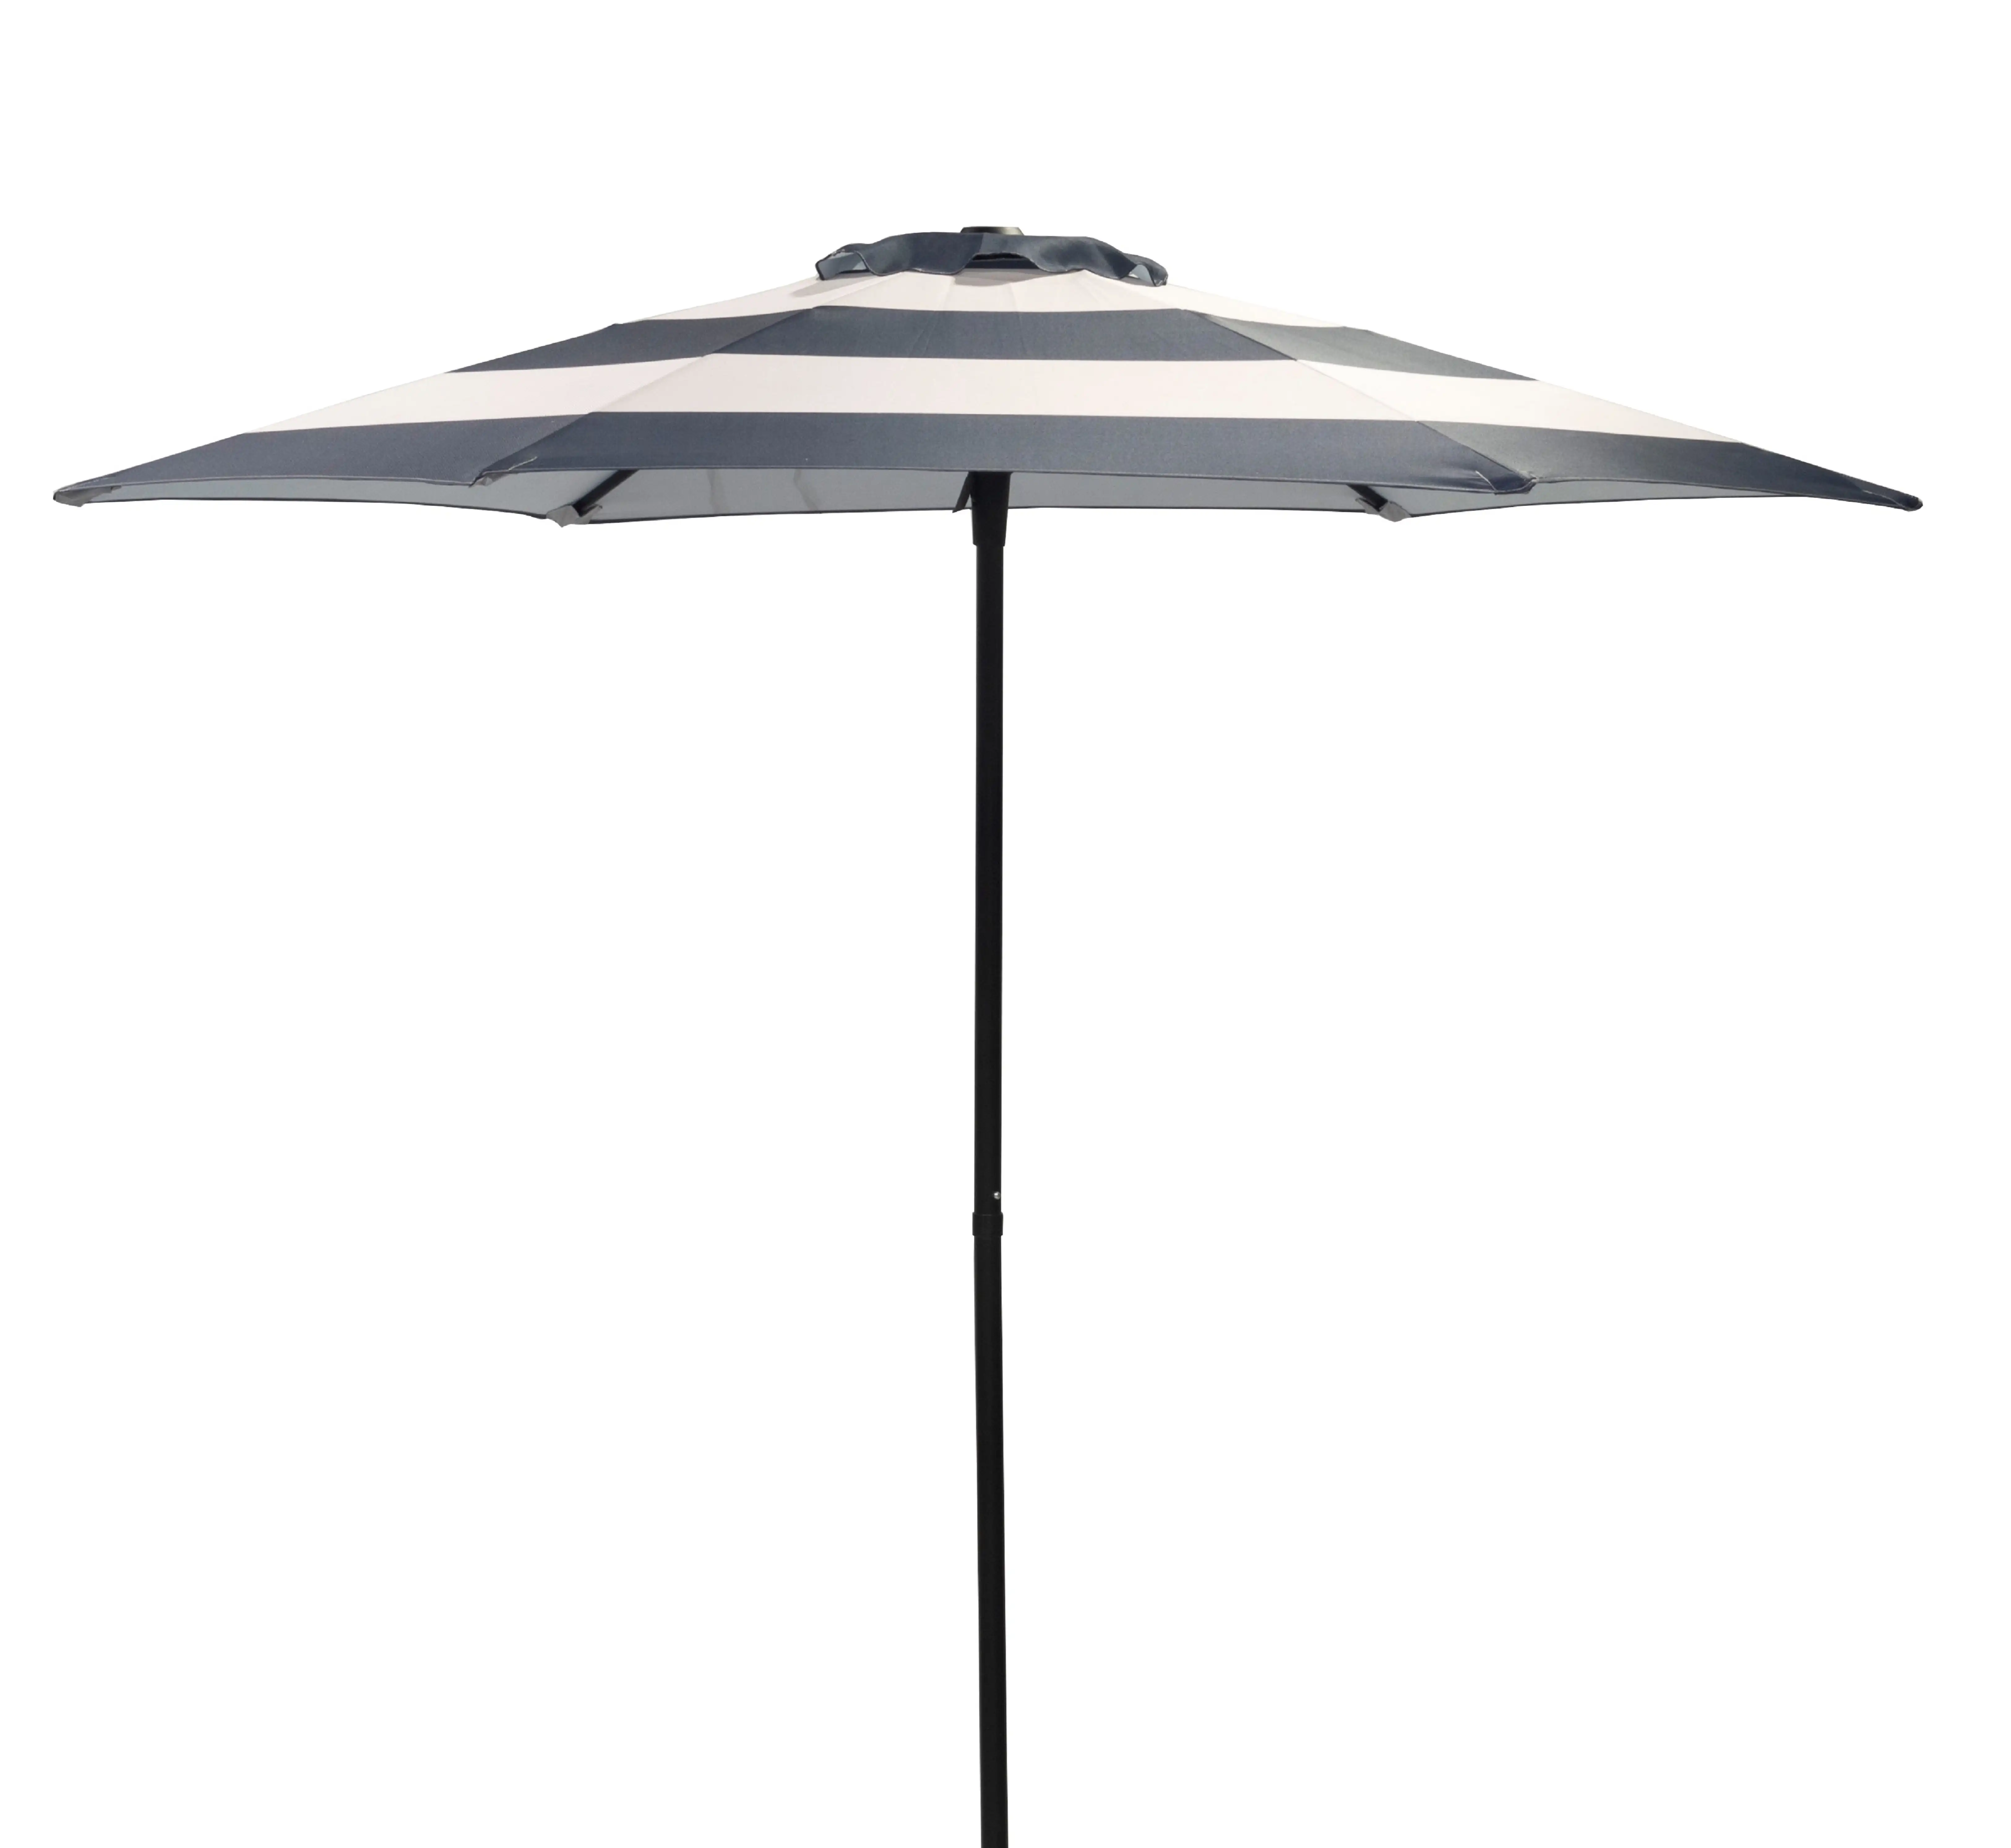 

Donglin 7.5ft Outdoor Market Patio Umbrella w/ Push Button Tilt, Striped Patio Umbrella